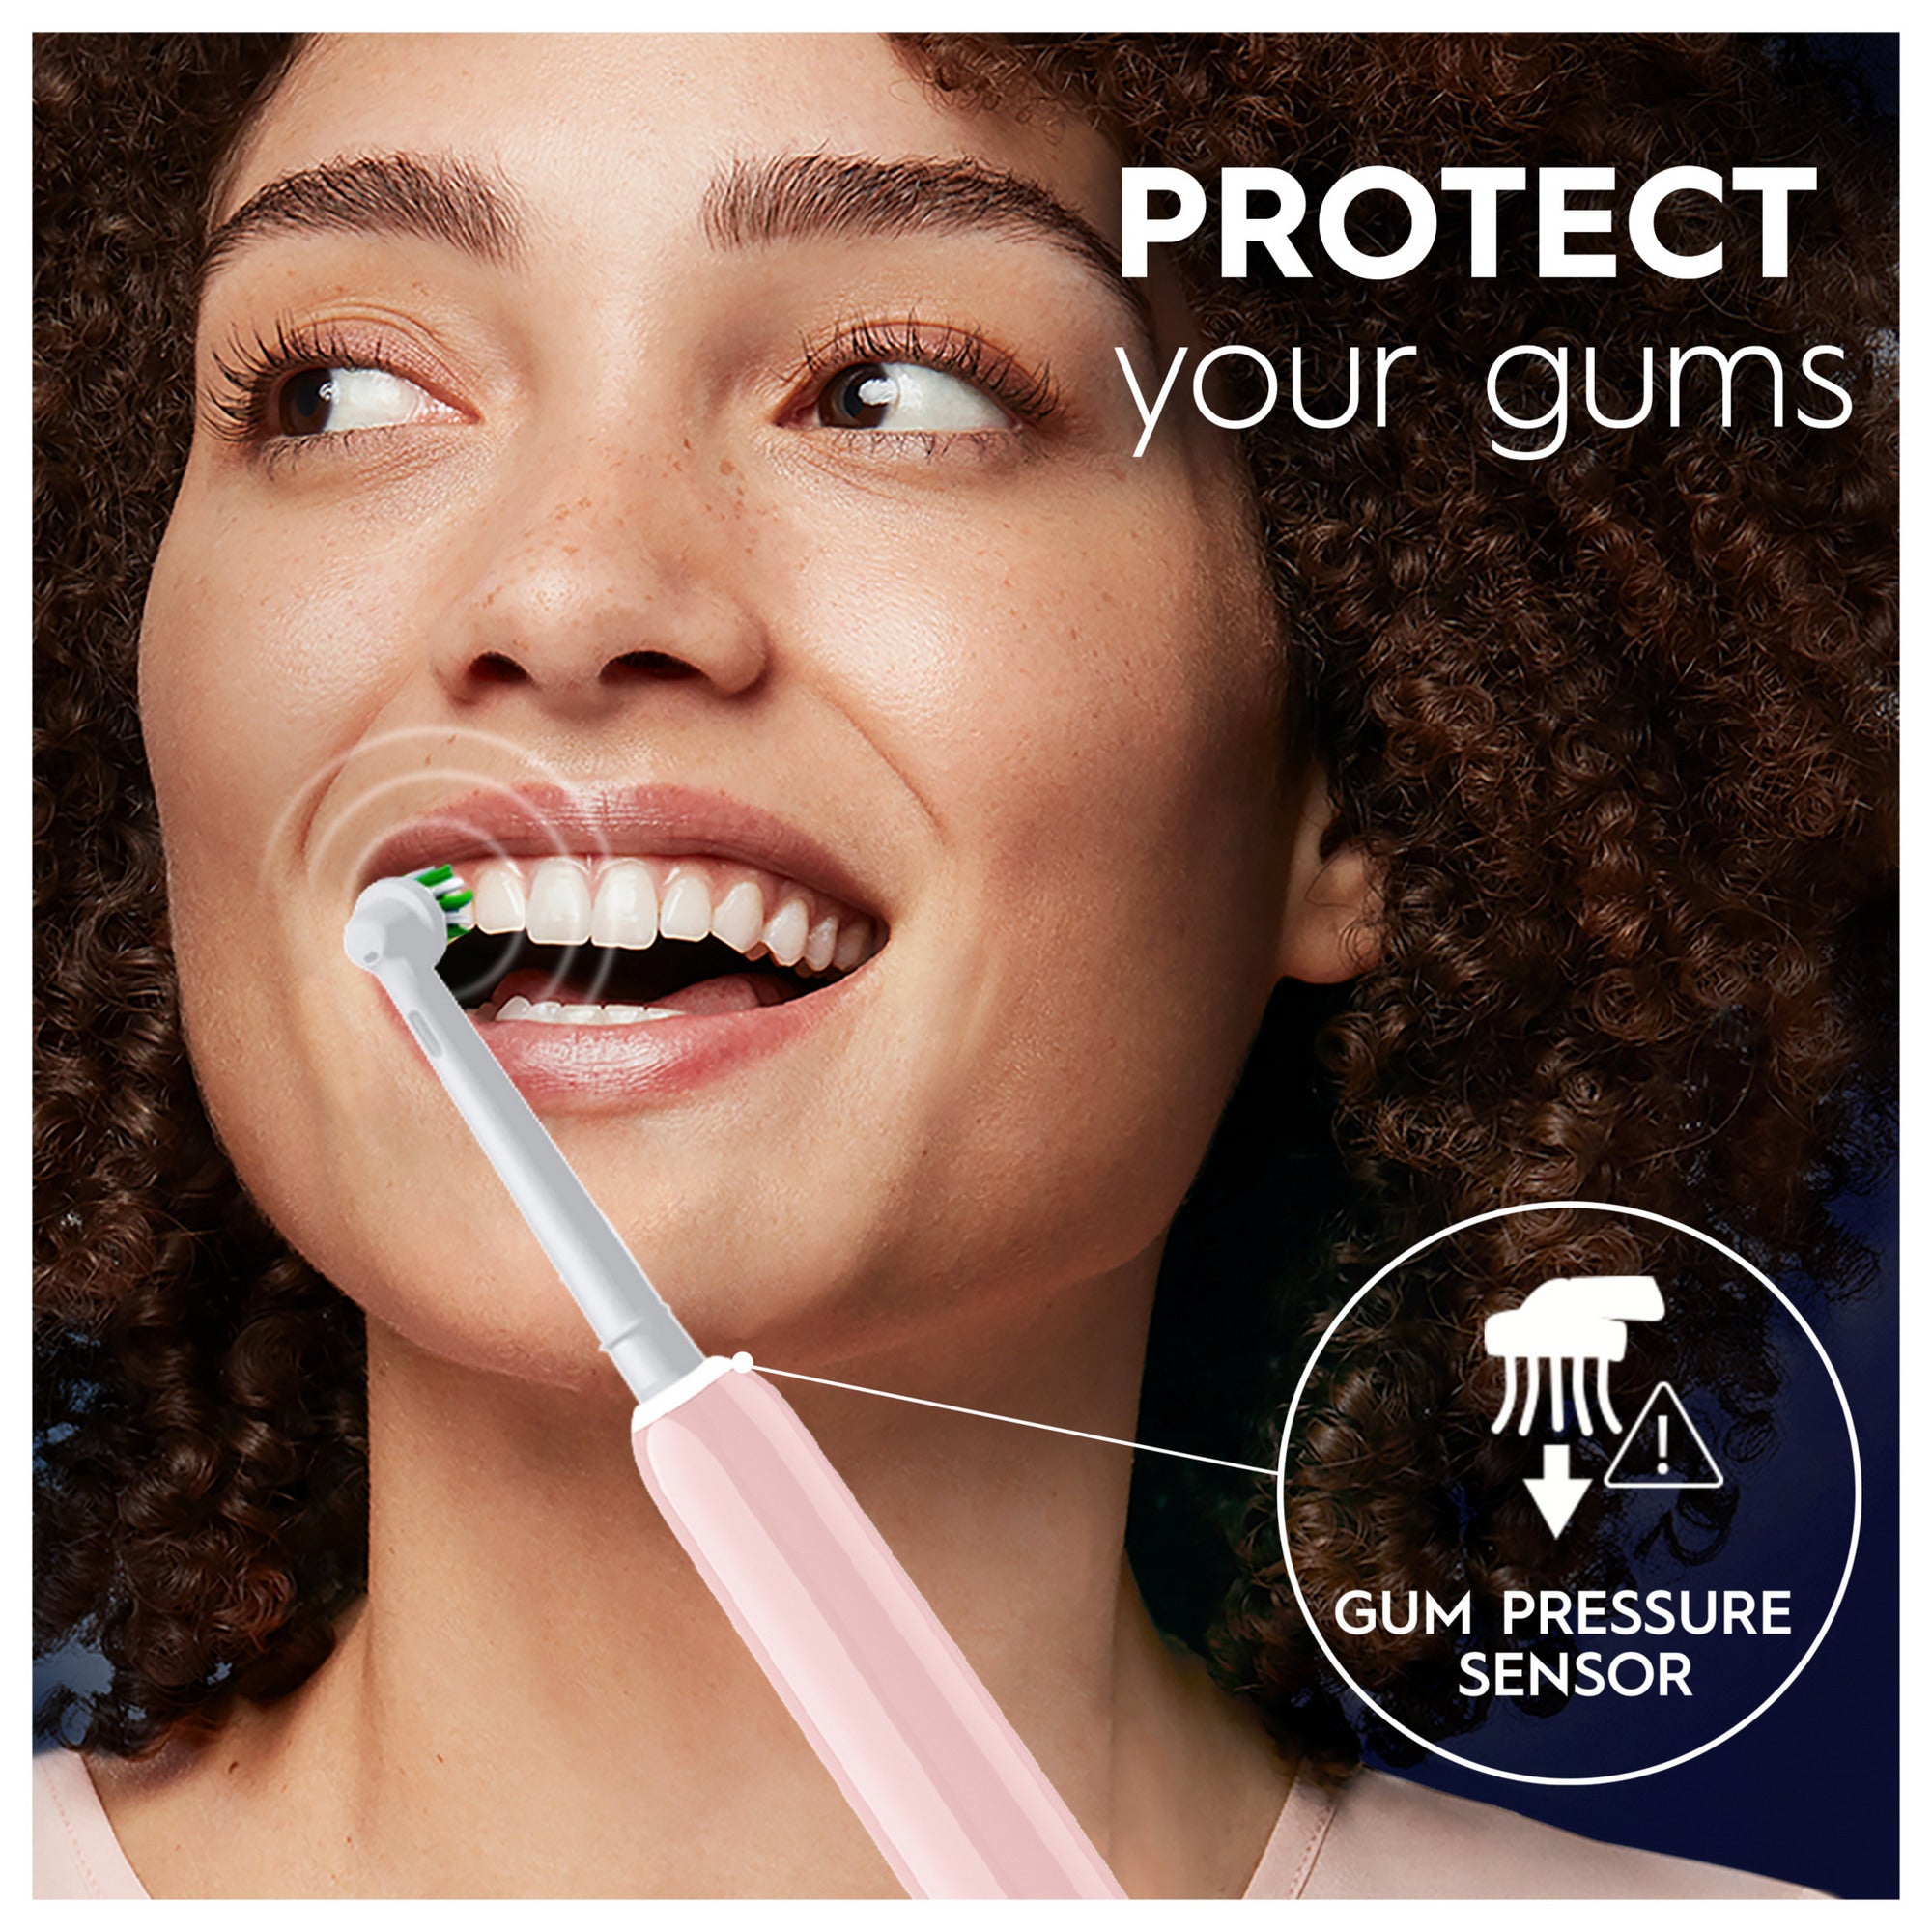 Oral B Pro 3D White Pink Toothbrush Set